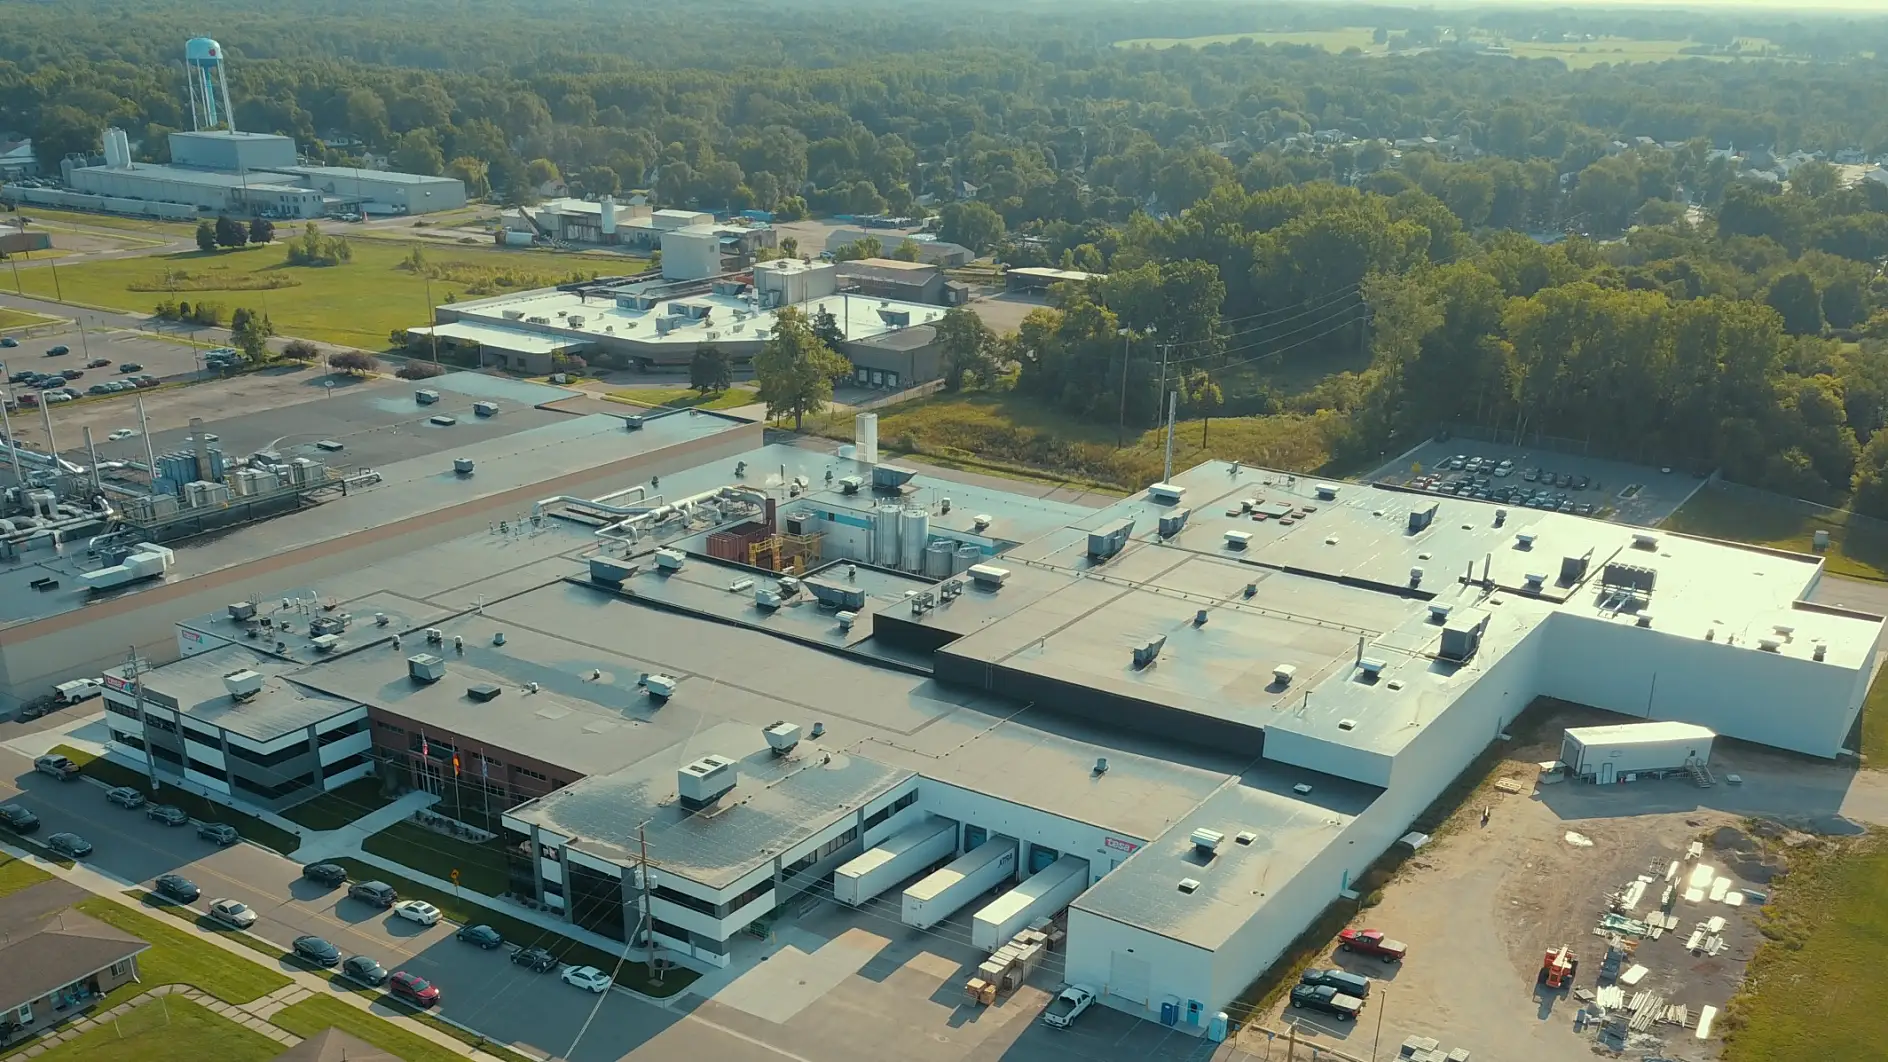 Zakład produkcyjny tesa w Sparcie w stanie Michigan (USA)